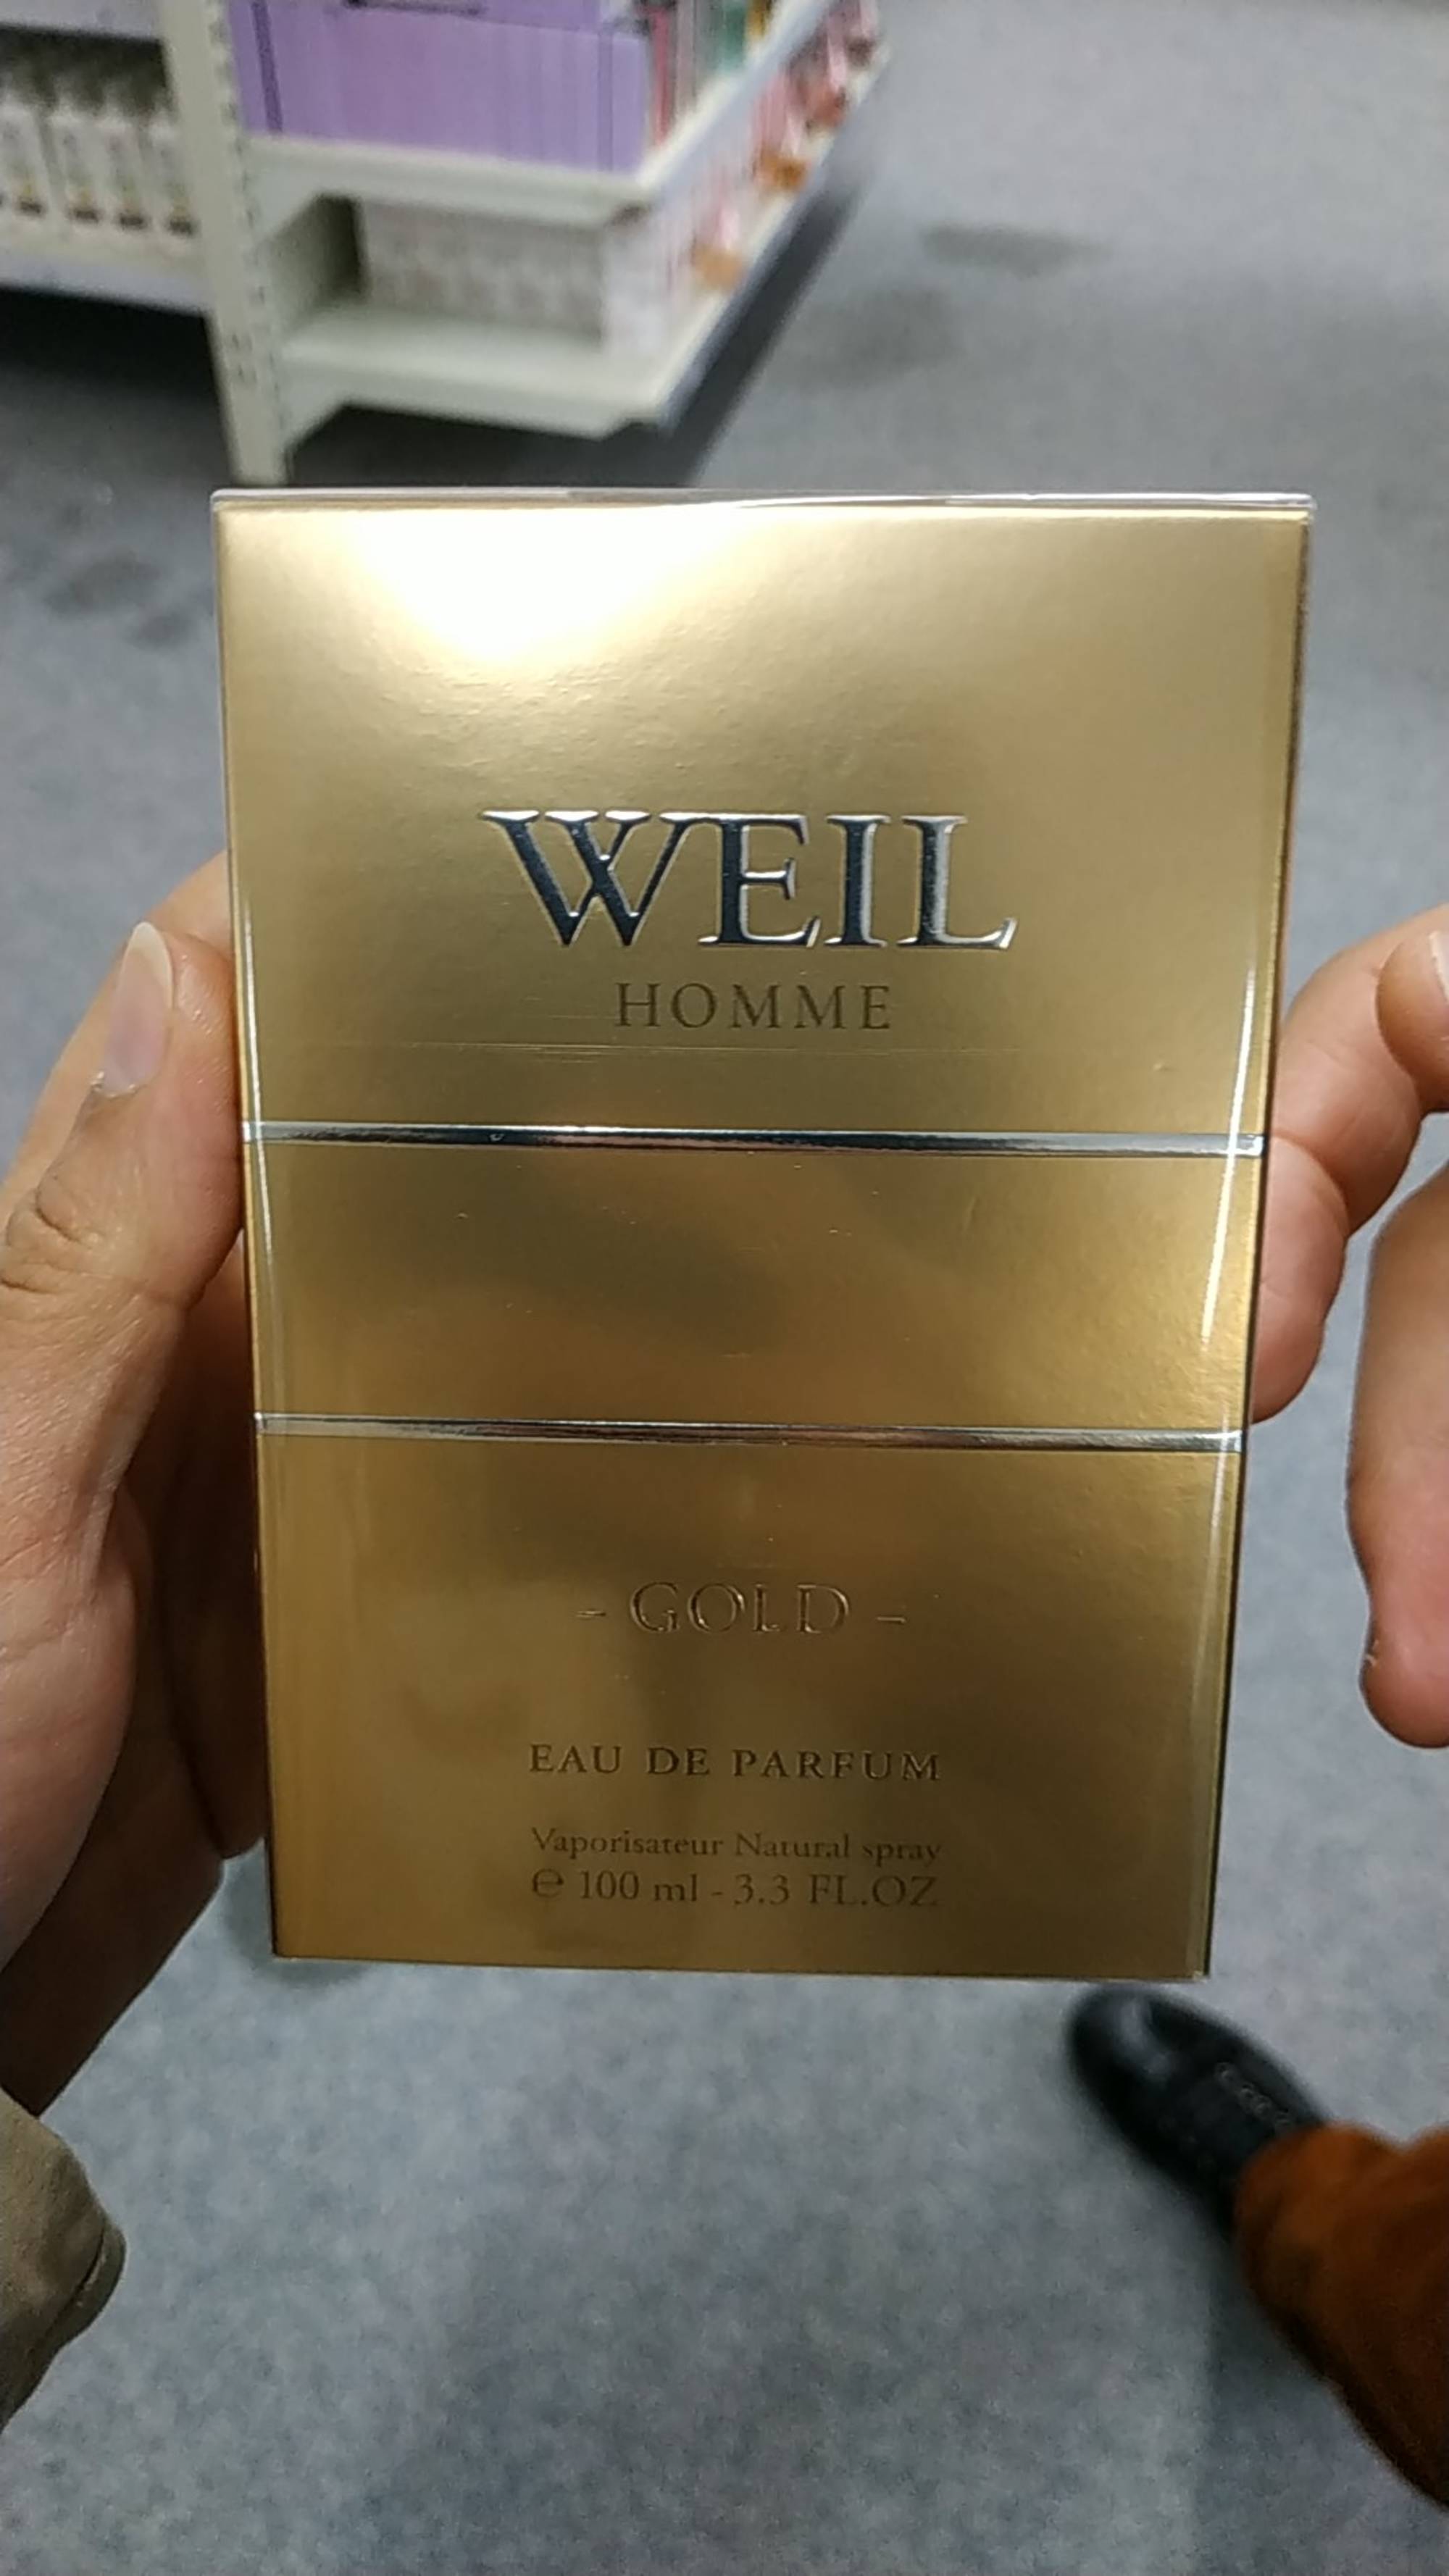 WEIL - Homme gold - Eau de parfum